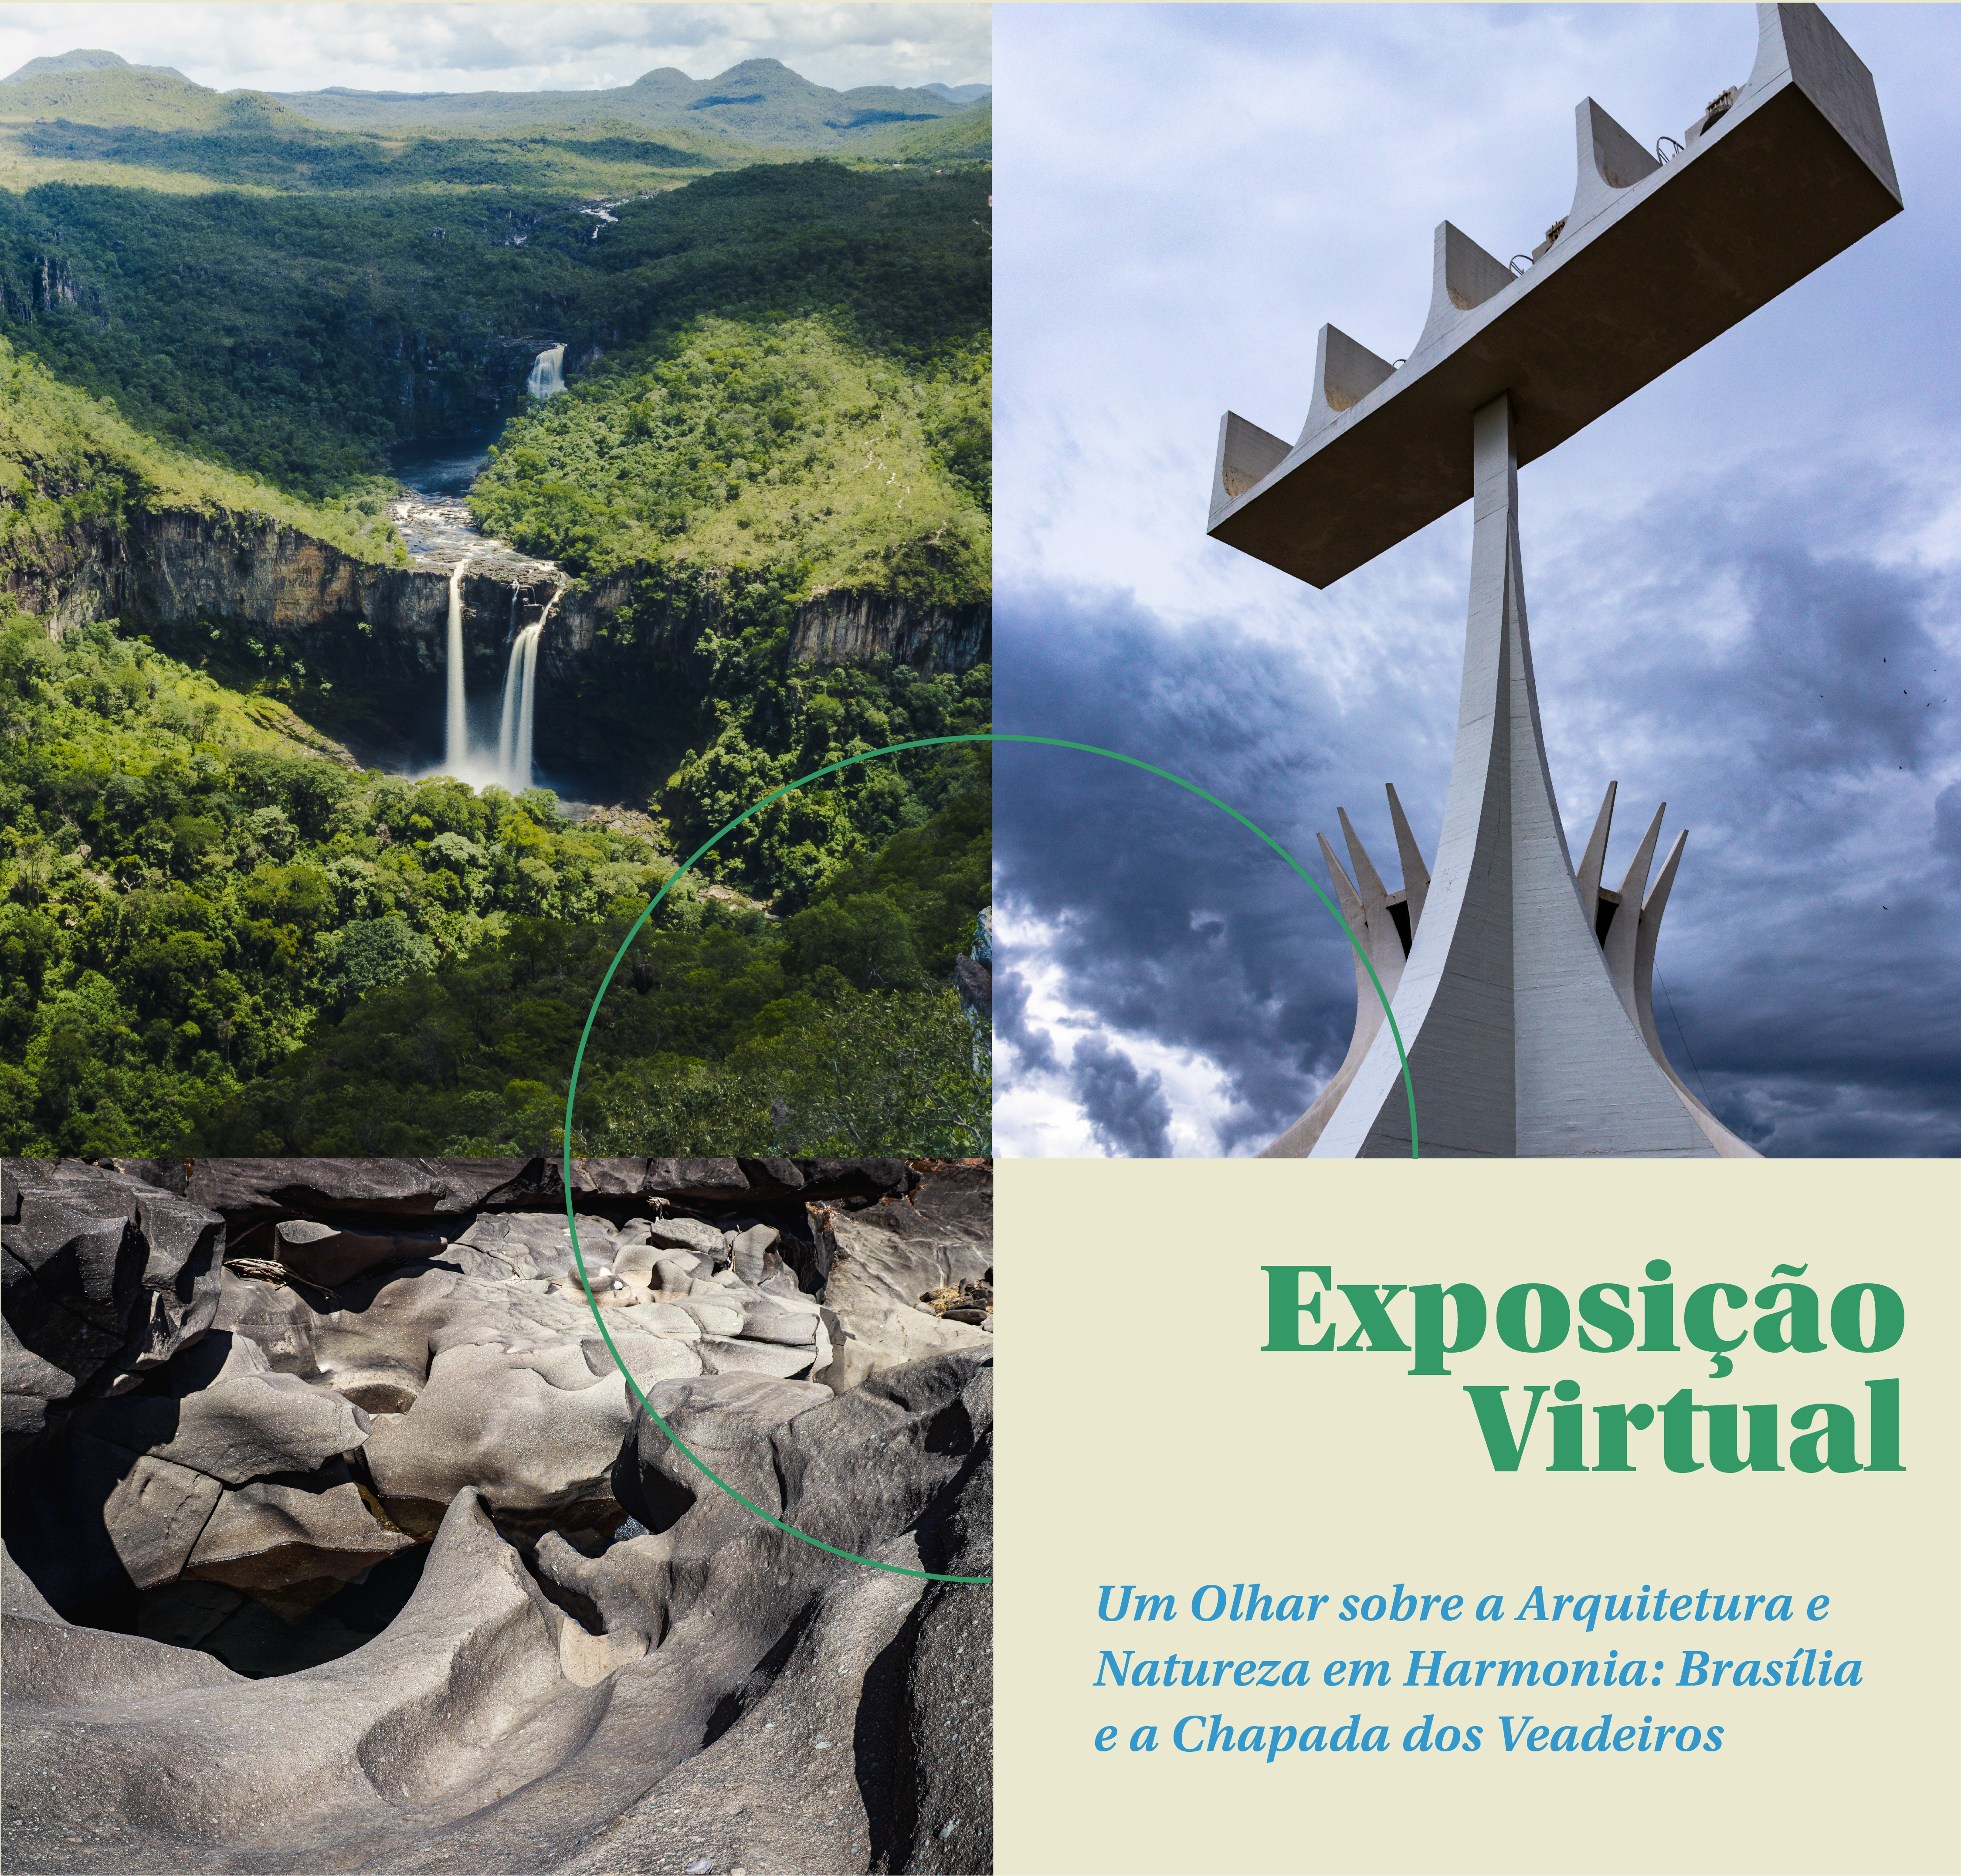 INSTITUCIONAL: Espaço Cultural Virtual do site do TRF1 apresenta exposição com fotografias de Fábio Cruz